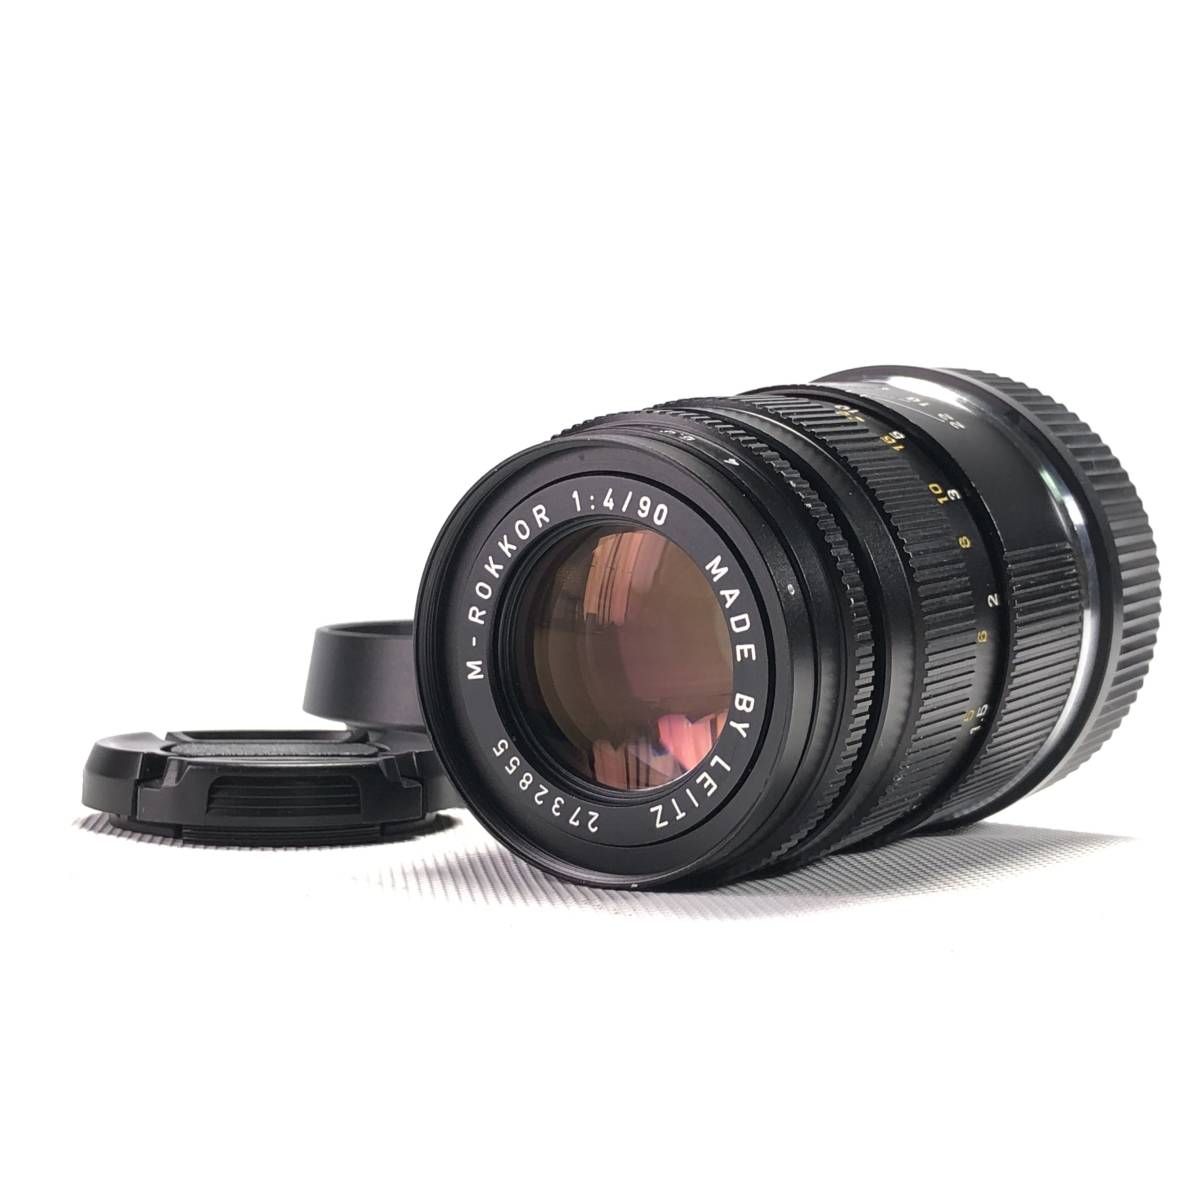 Leitz M-Rokkor 1:4/90 Leica Mマウント - カメラ